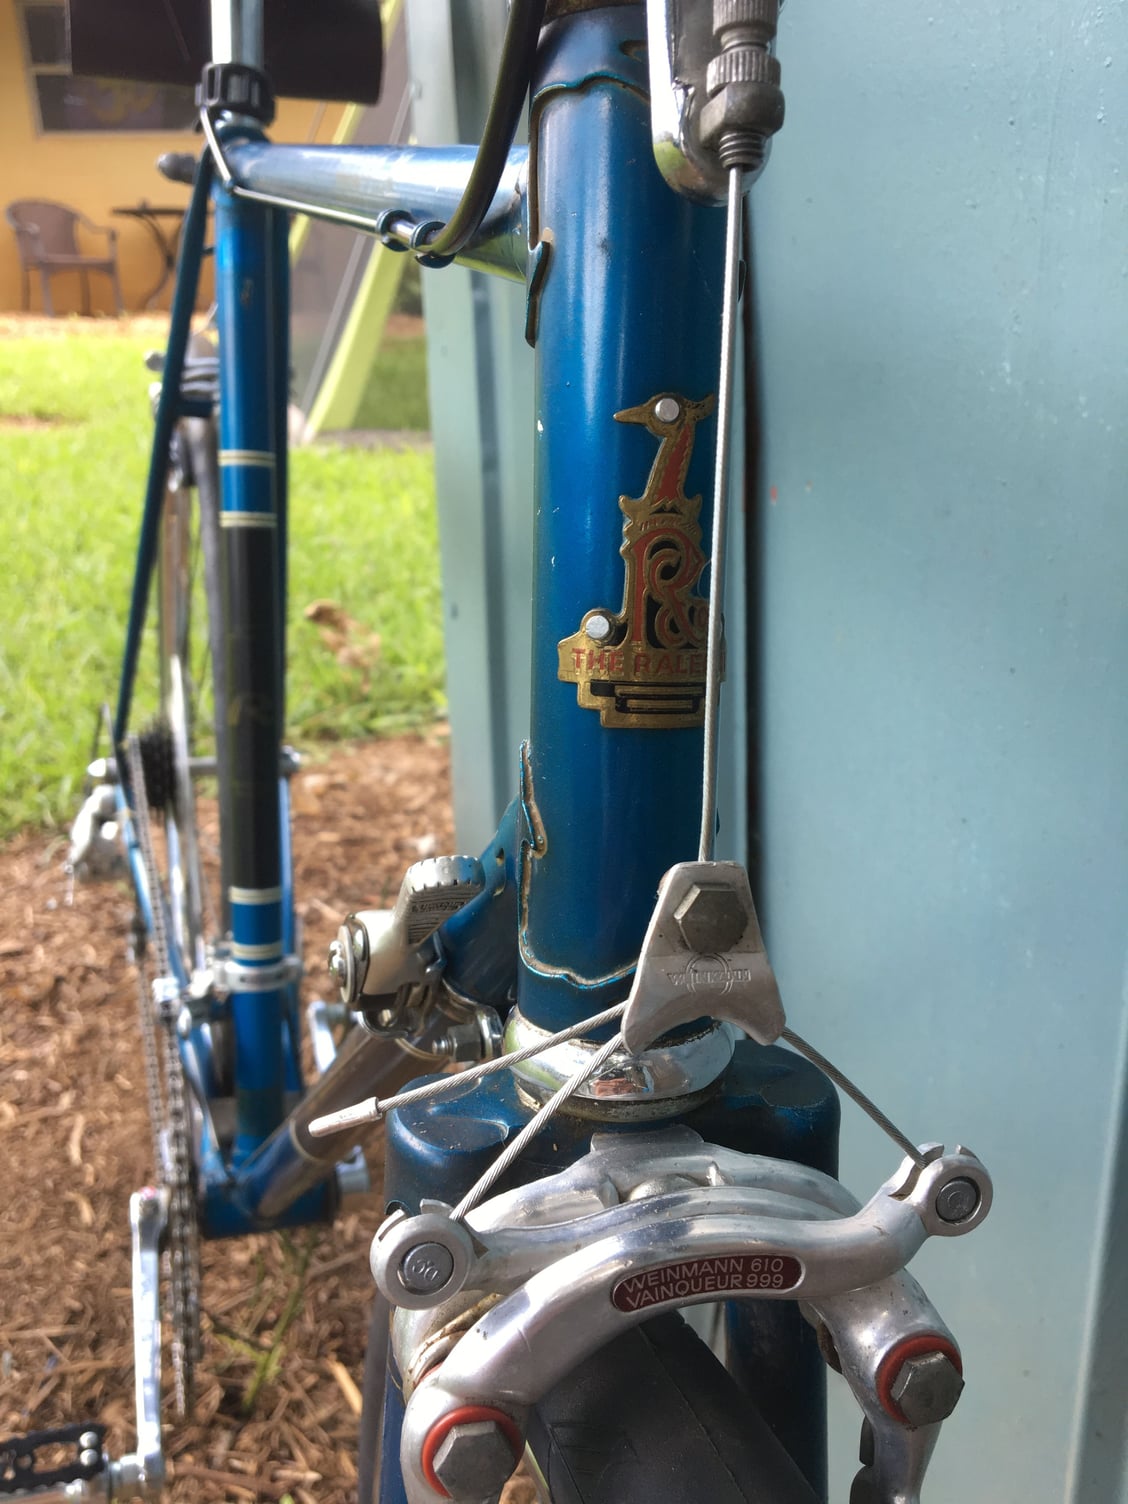 raleigh bicycles serial numbers